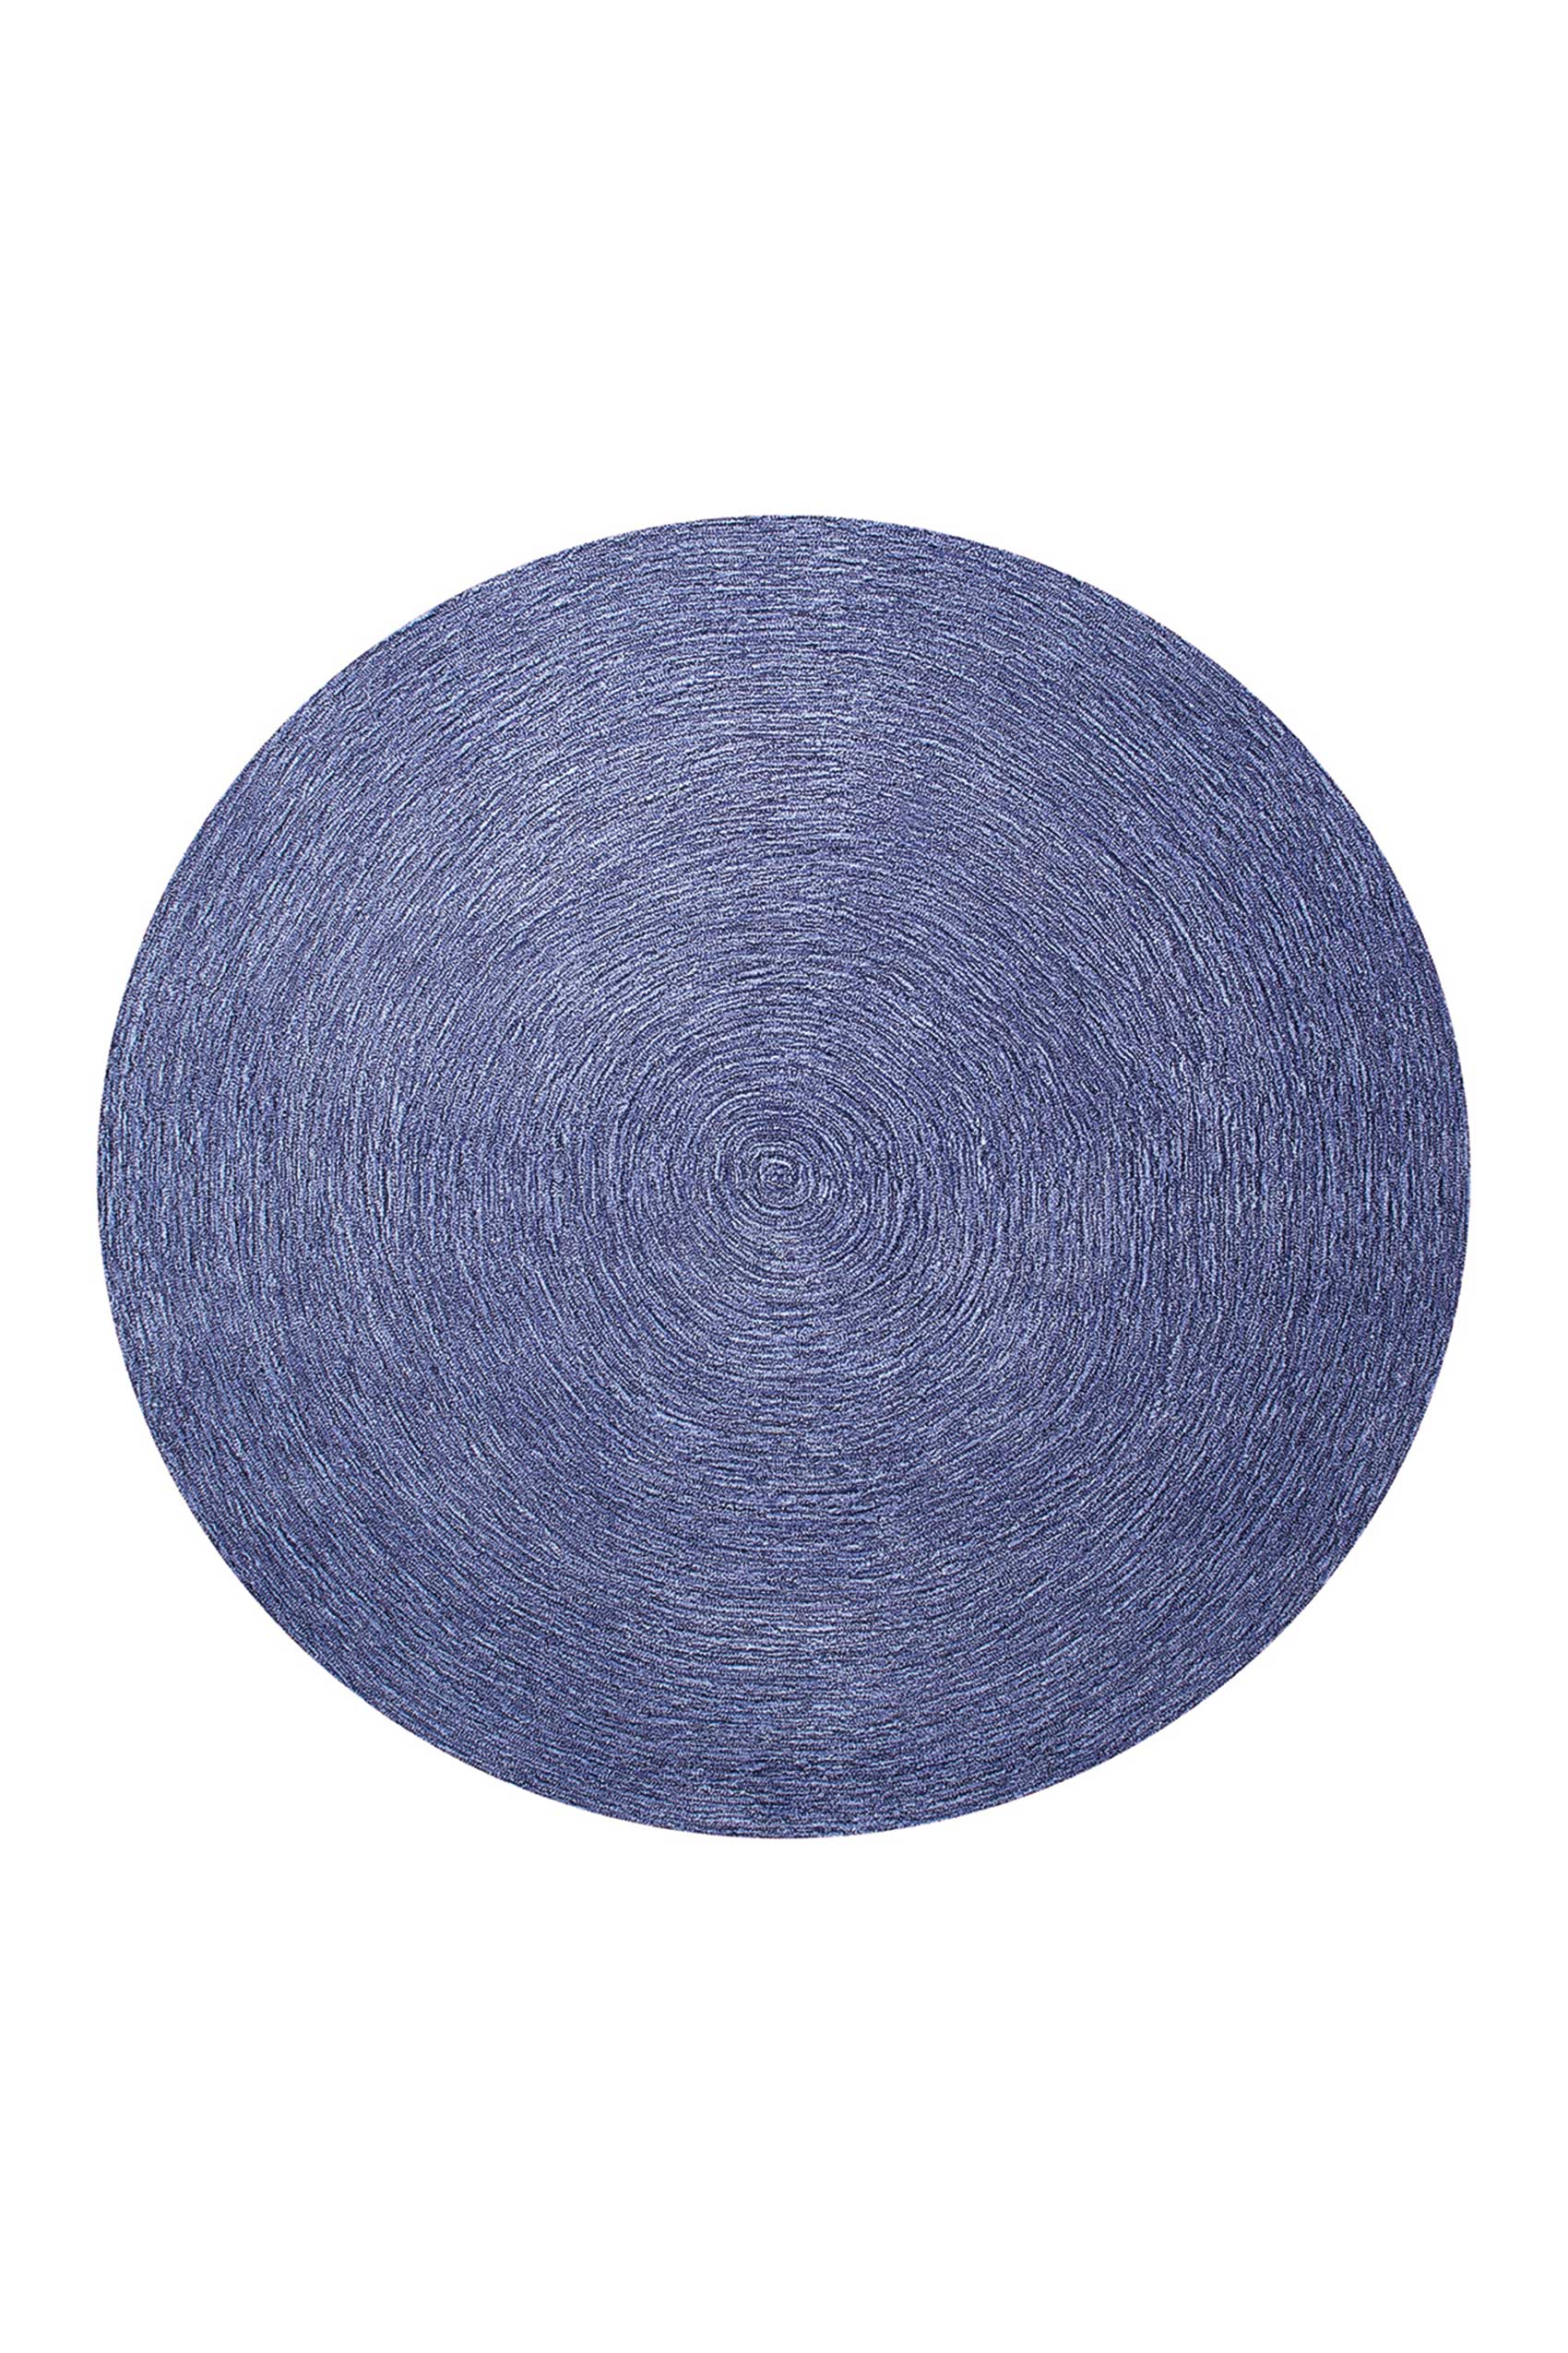 Esprit Teppich Rund Blau meliert aus Wolle » Colour In Motion « - Ansicht 1